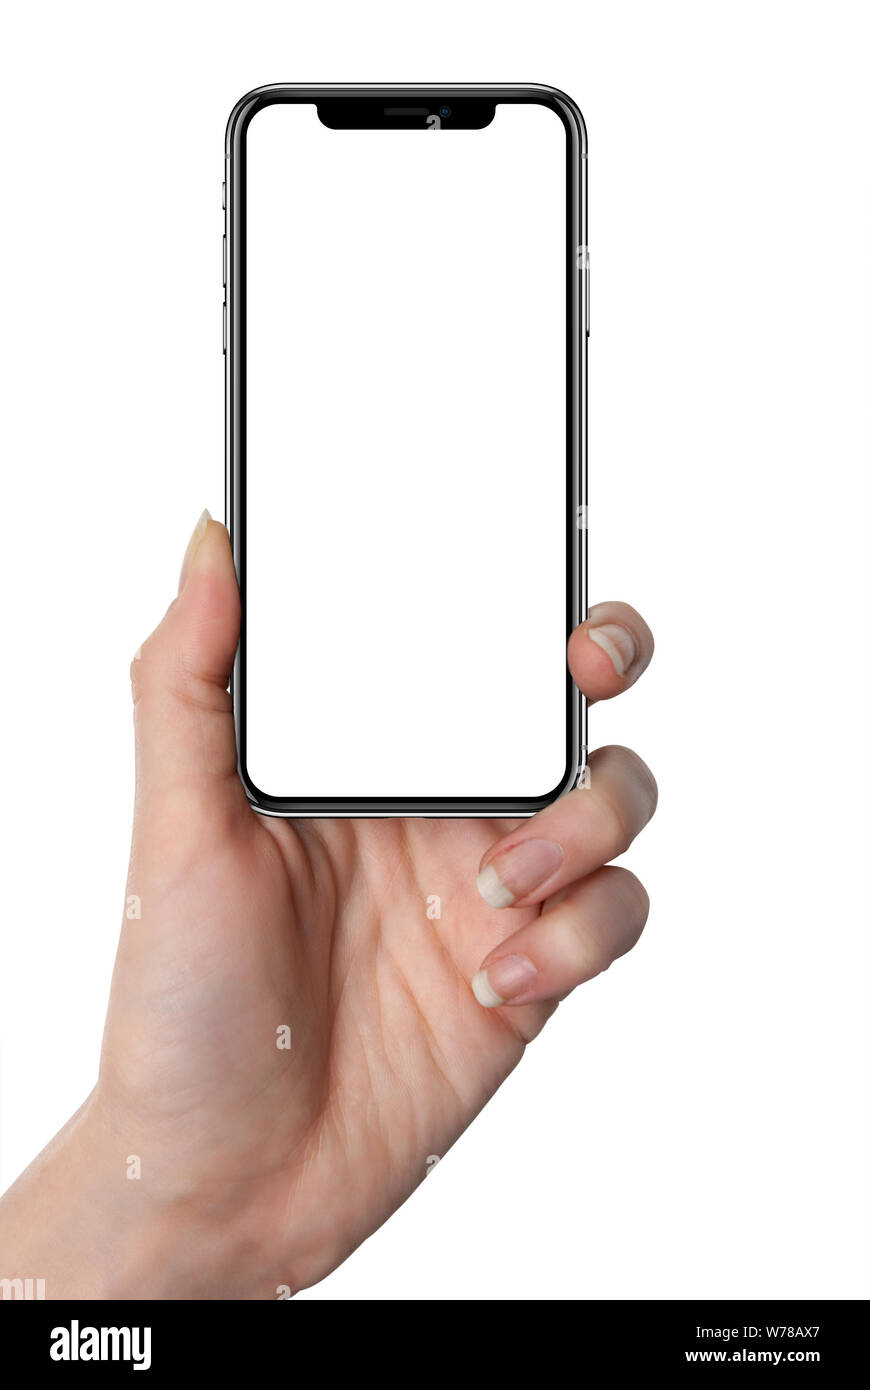 Điện thoại thông minh màu đen tương tự iPhone X sở hữu kiểu dáng và cấu hình cao cấp. Chiếc điện thoại này sẽ khiến bạn bị thu hút ngay từ cái nhìn đầu tiên. Xem hình ảnh để tìm hiểu thêm về sản phẩm.